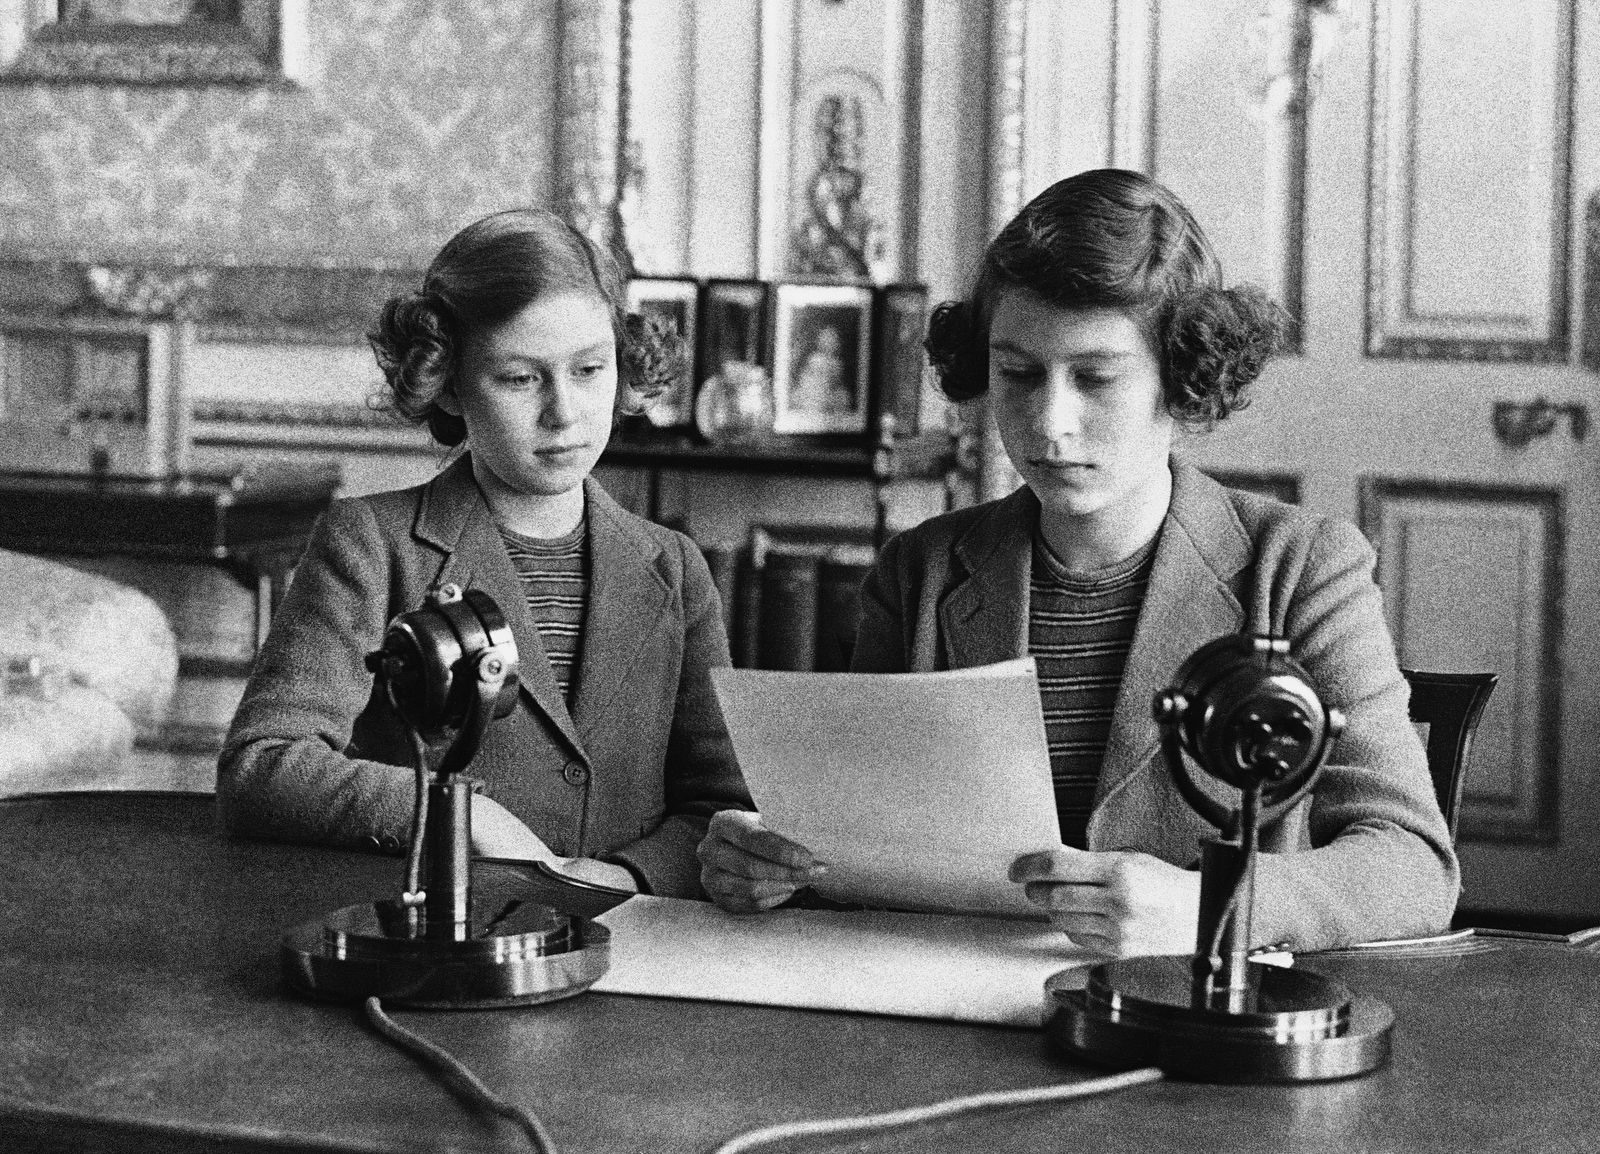 Elizabeth (phải), 14 tuổi, ngồi cạnh chị gái trong buổi phát thanh vào ngày 13.10.1940. Trong buổi phát thanh, lần đầu tiên, Elizabeth nói rằng trẻ em nước Anh rất vui vẻ và dũng cảm. Ảnh: AP